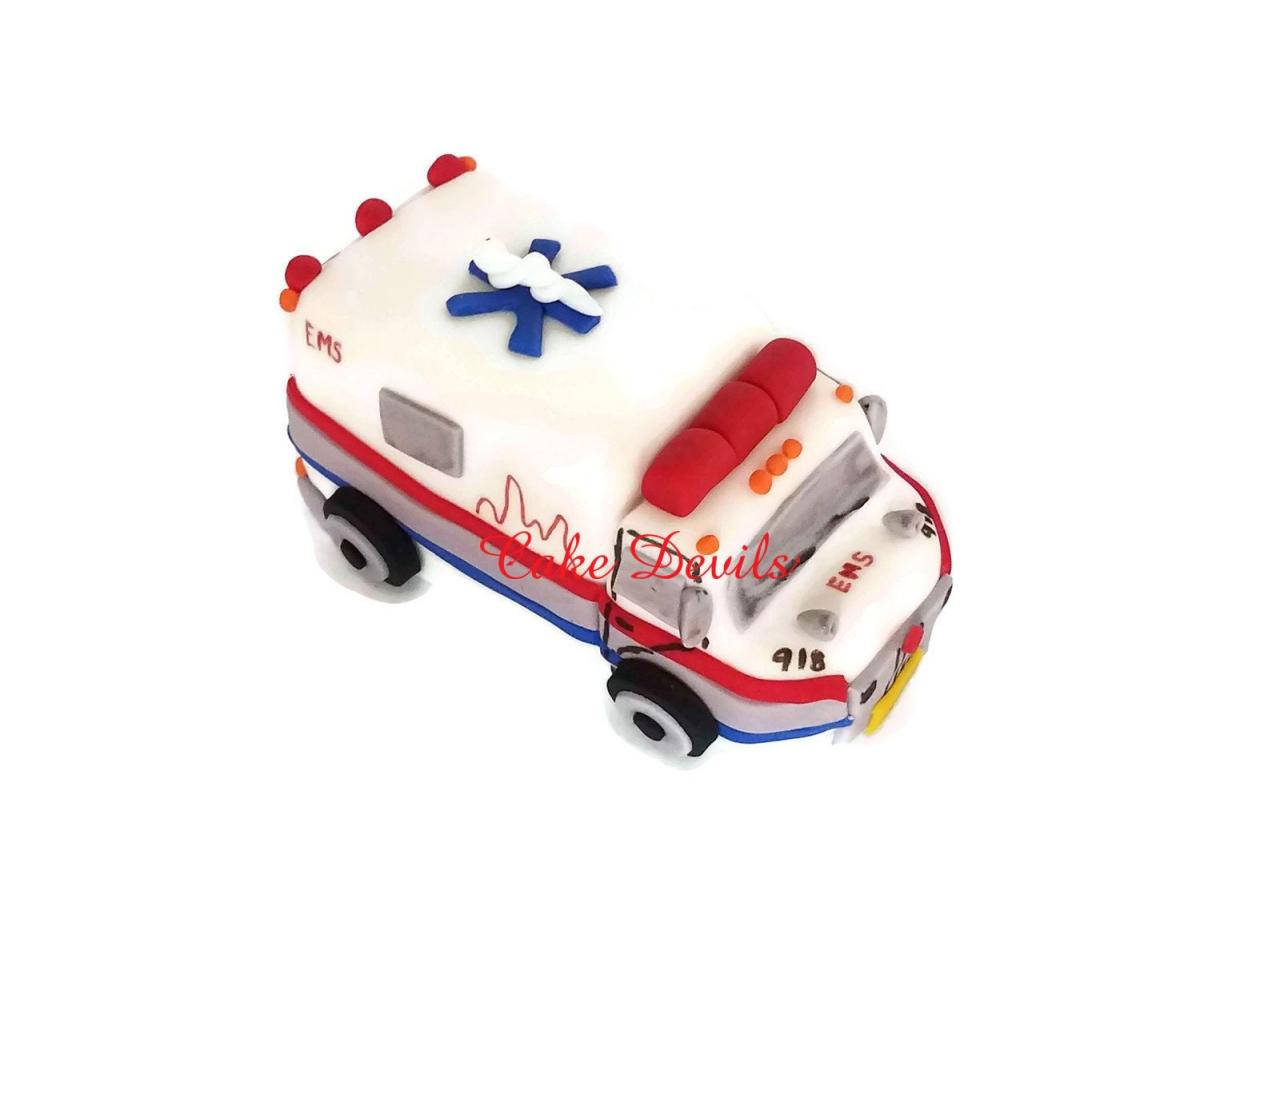 Ambulance Cake Topper, Fondant, Handmade Edible, Ambulance Cake Decorations, Medical Cake Topper, Doctor, Emt, Nurse